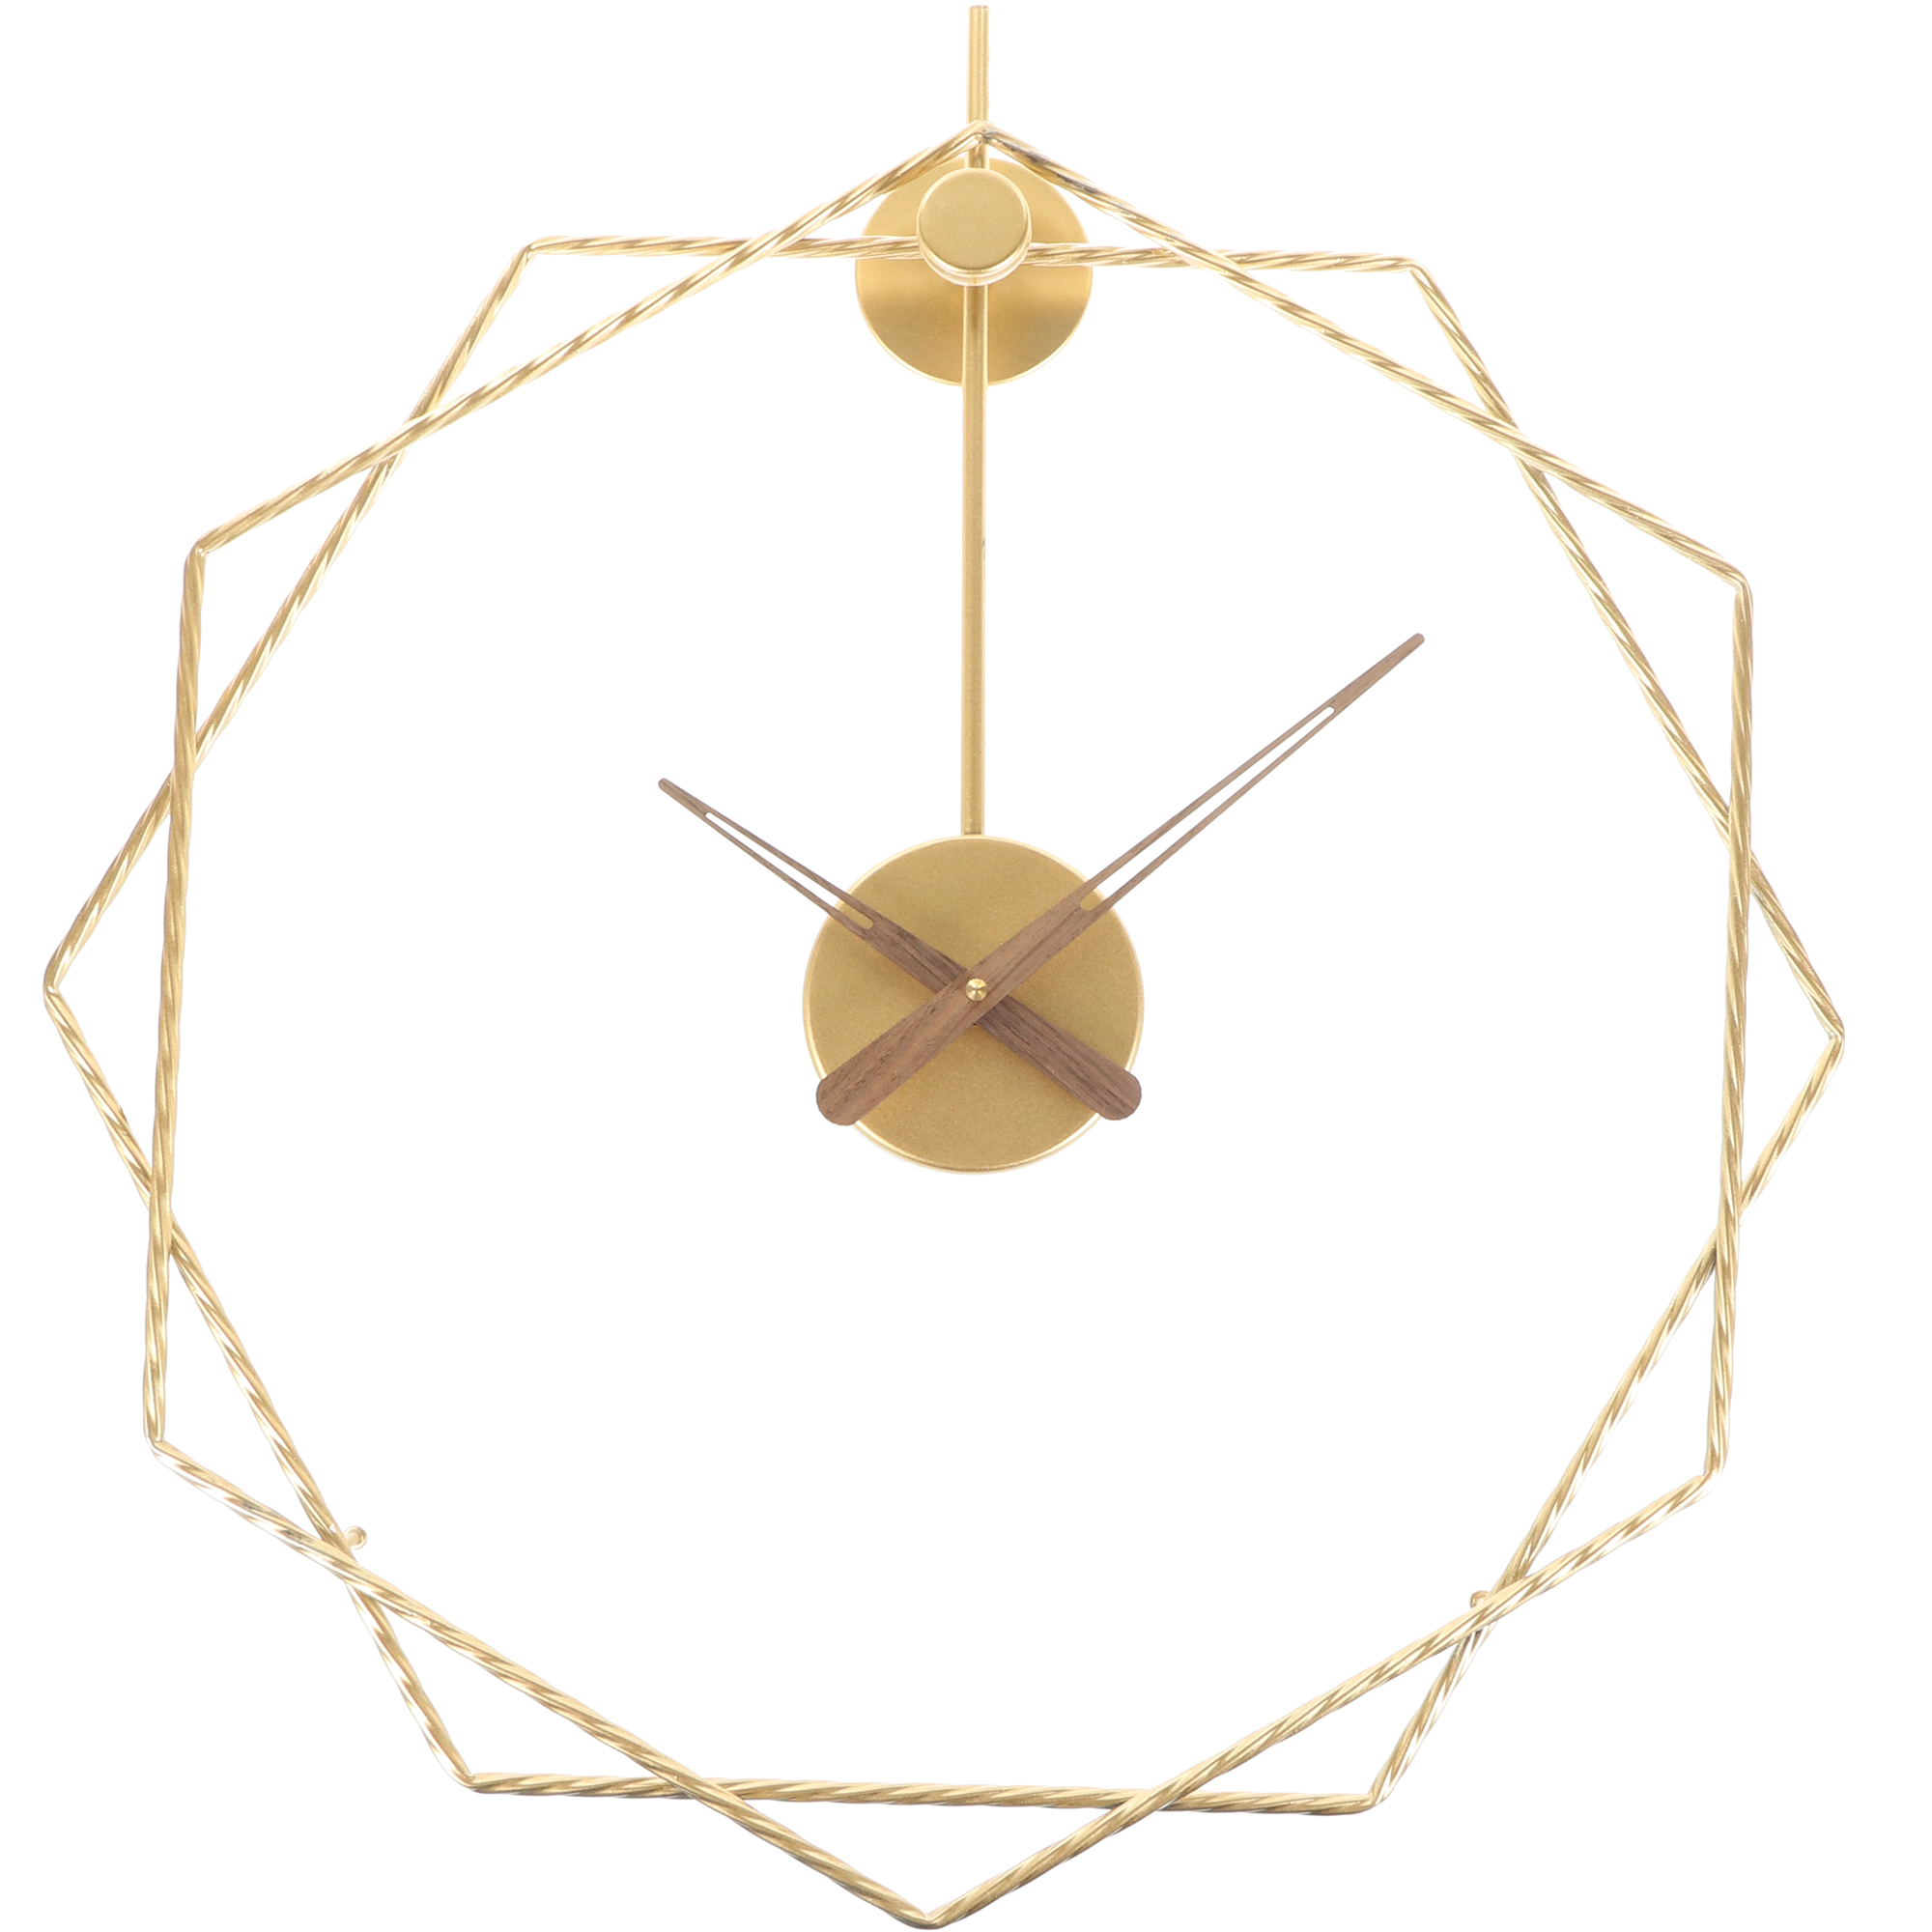  Настенные часы JJT геометрические золотые, 50х50 см